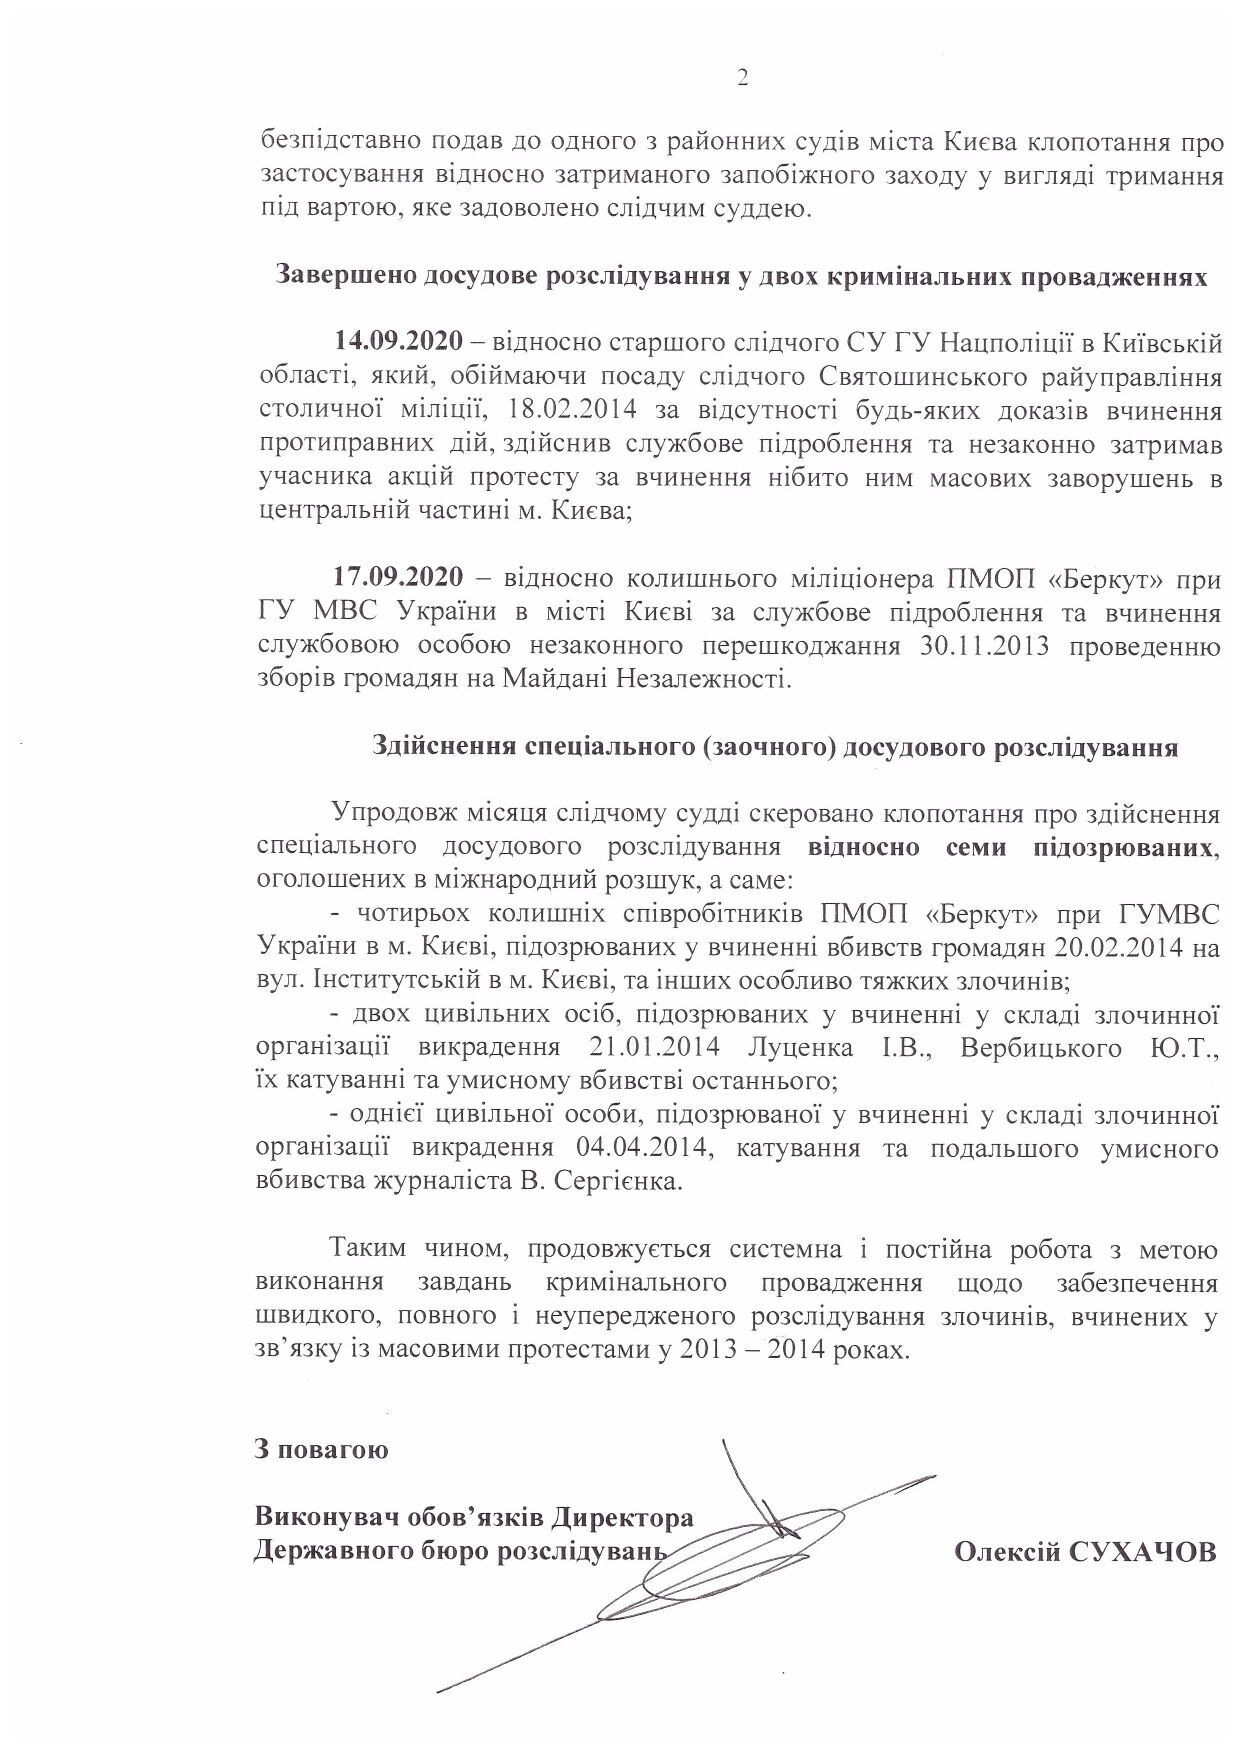 Звіт про розслідування «справ Майдану» за вересень 2020 року